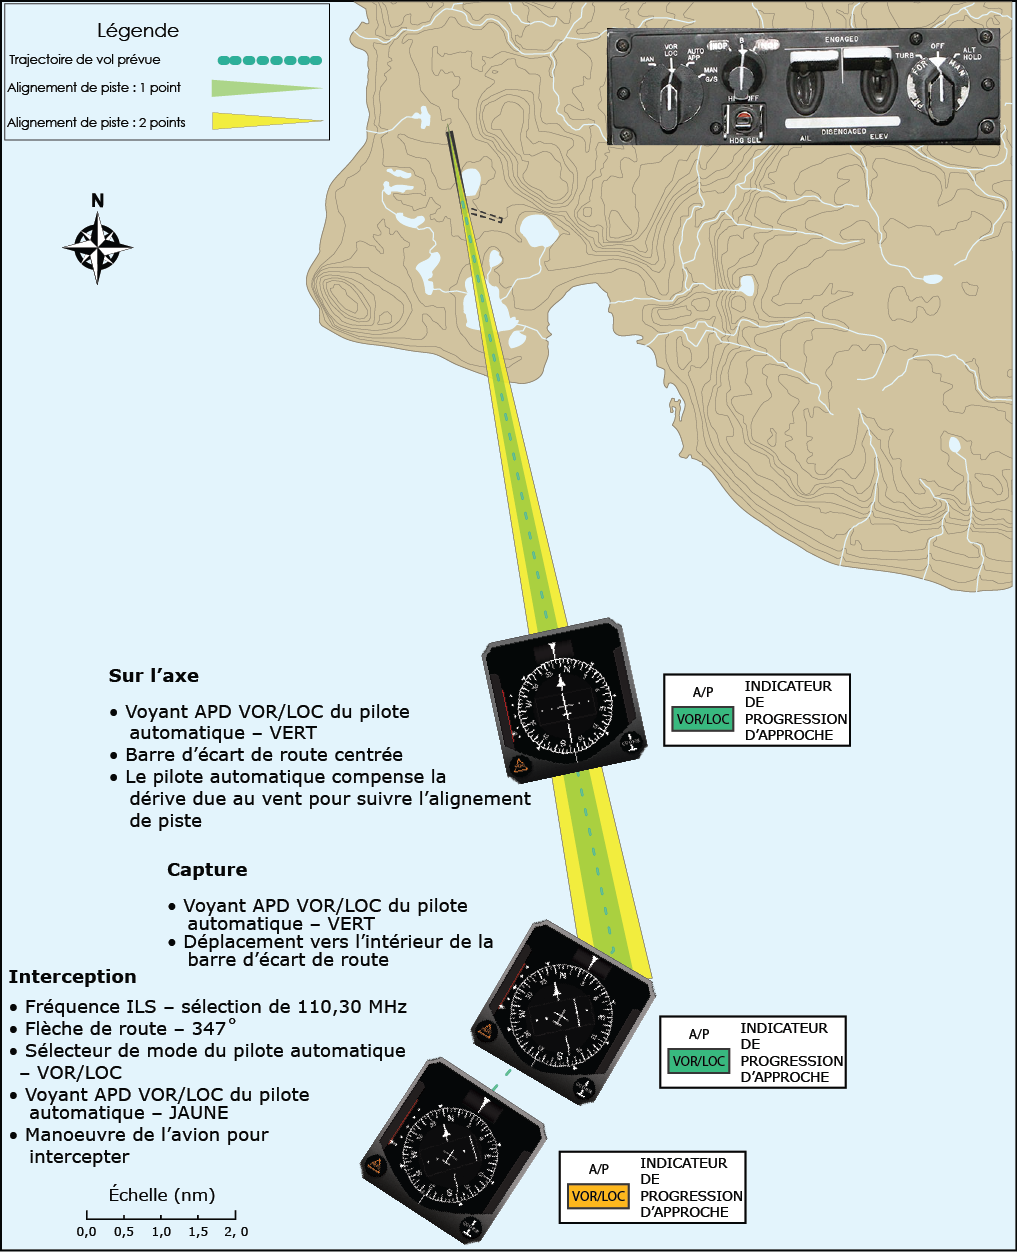 Interception du système d'atterrissage aux instruments pour le pilote automatique en mode VOR/LOC